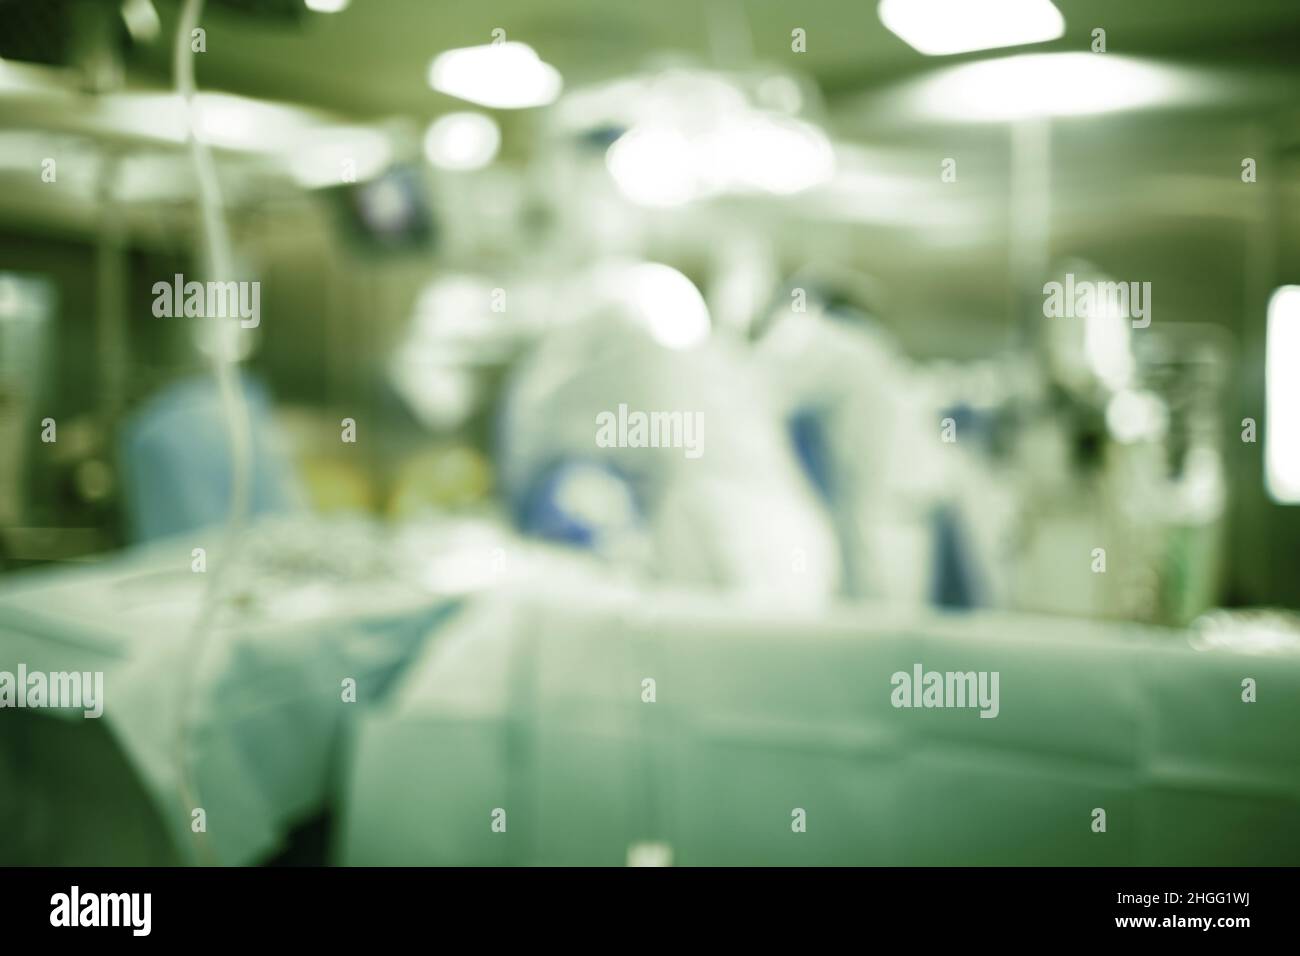 Team chirurgico di lavoro nella sala operatoria avanzata, background non focalizzato. Foto Stock